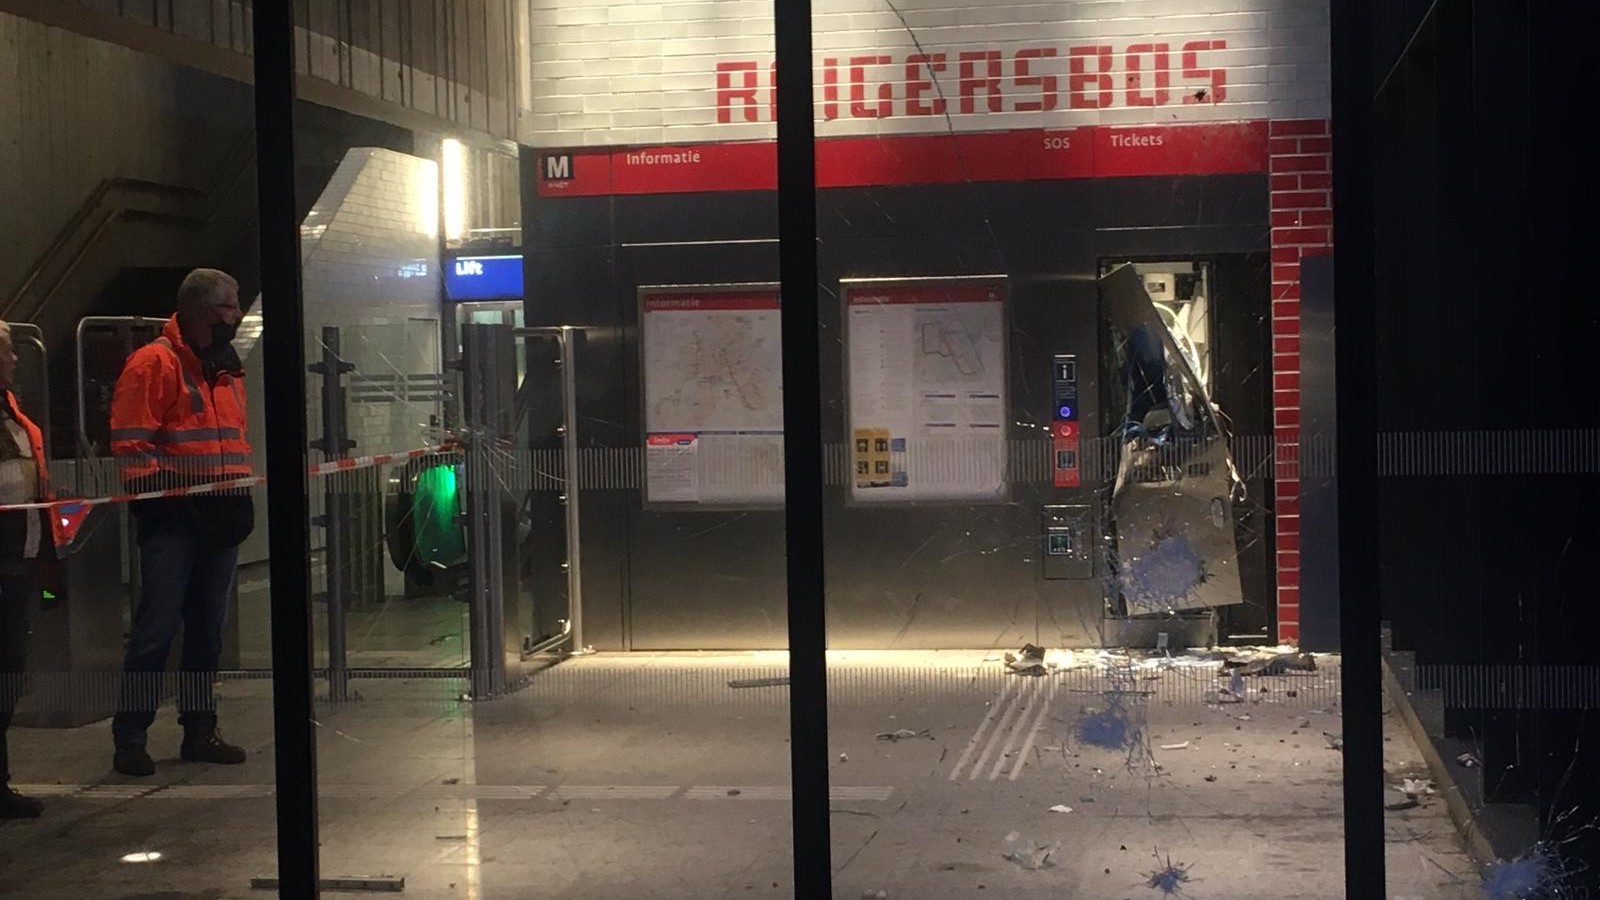 Kaartjesautomaat Reigersbos opgeblazen